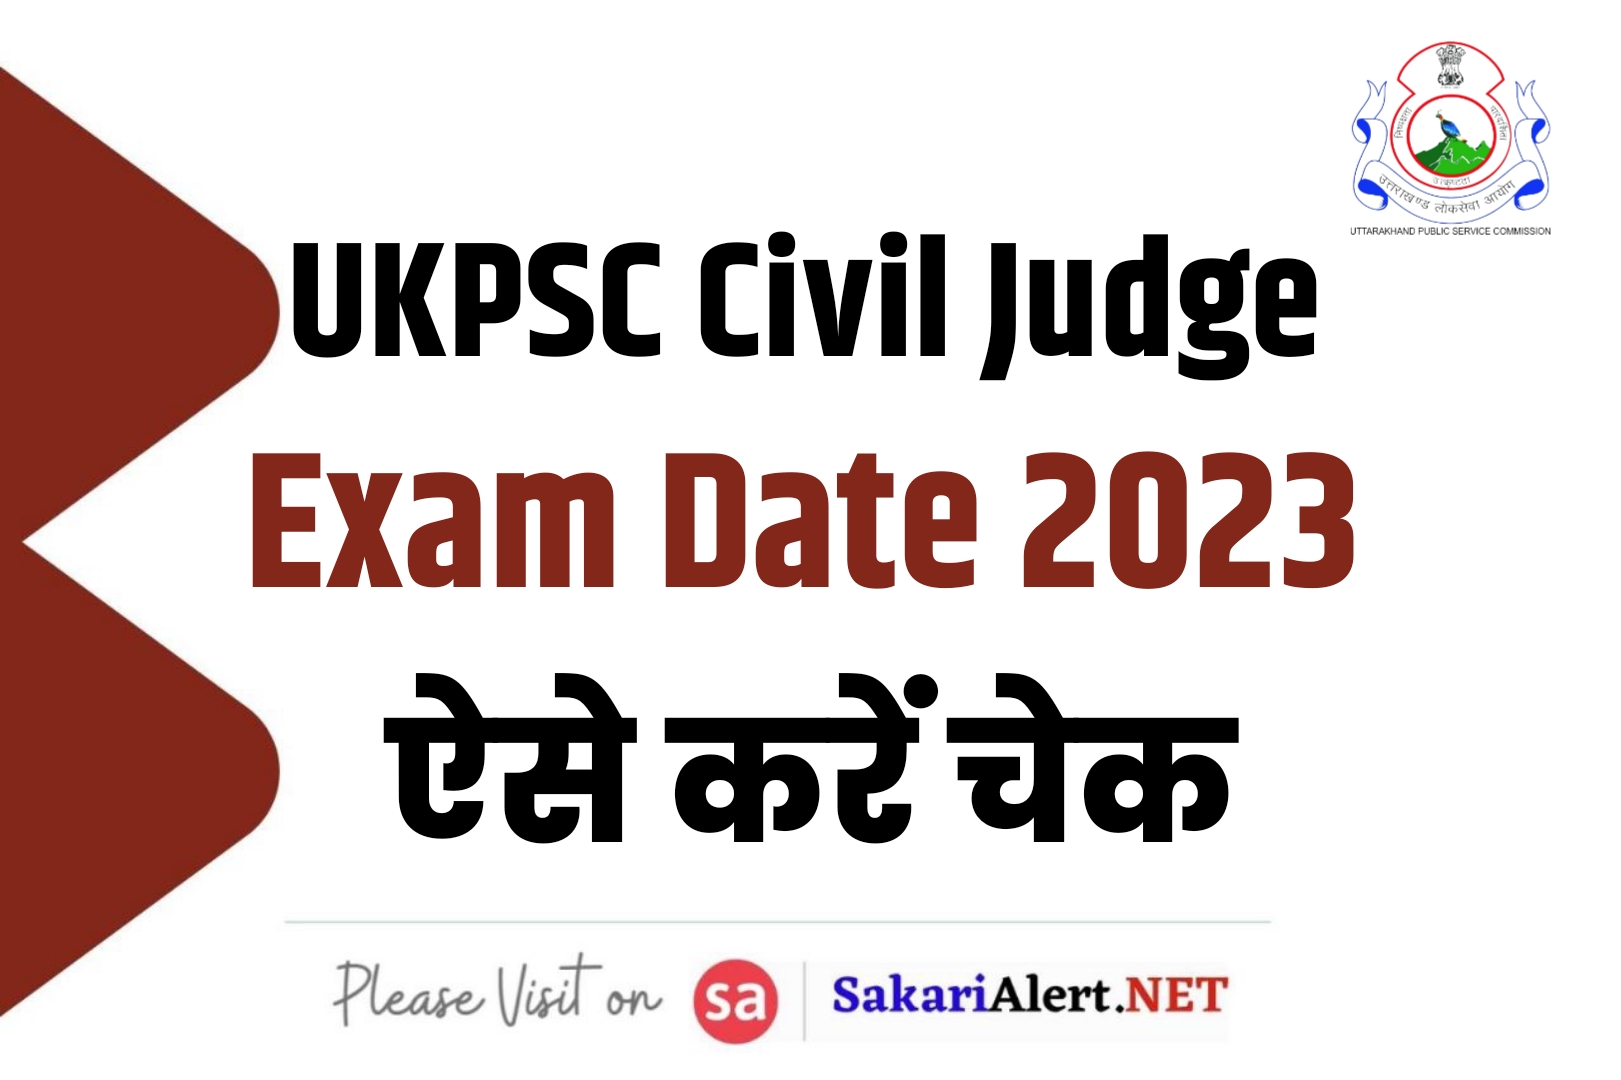 UKPSC Civil Judge Exam Date 2023